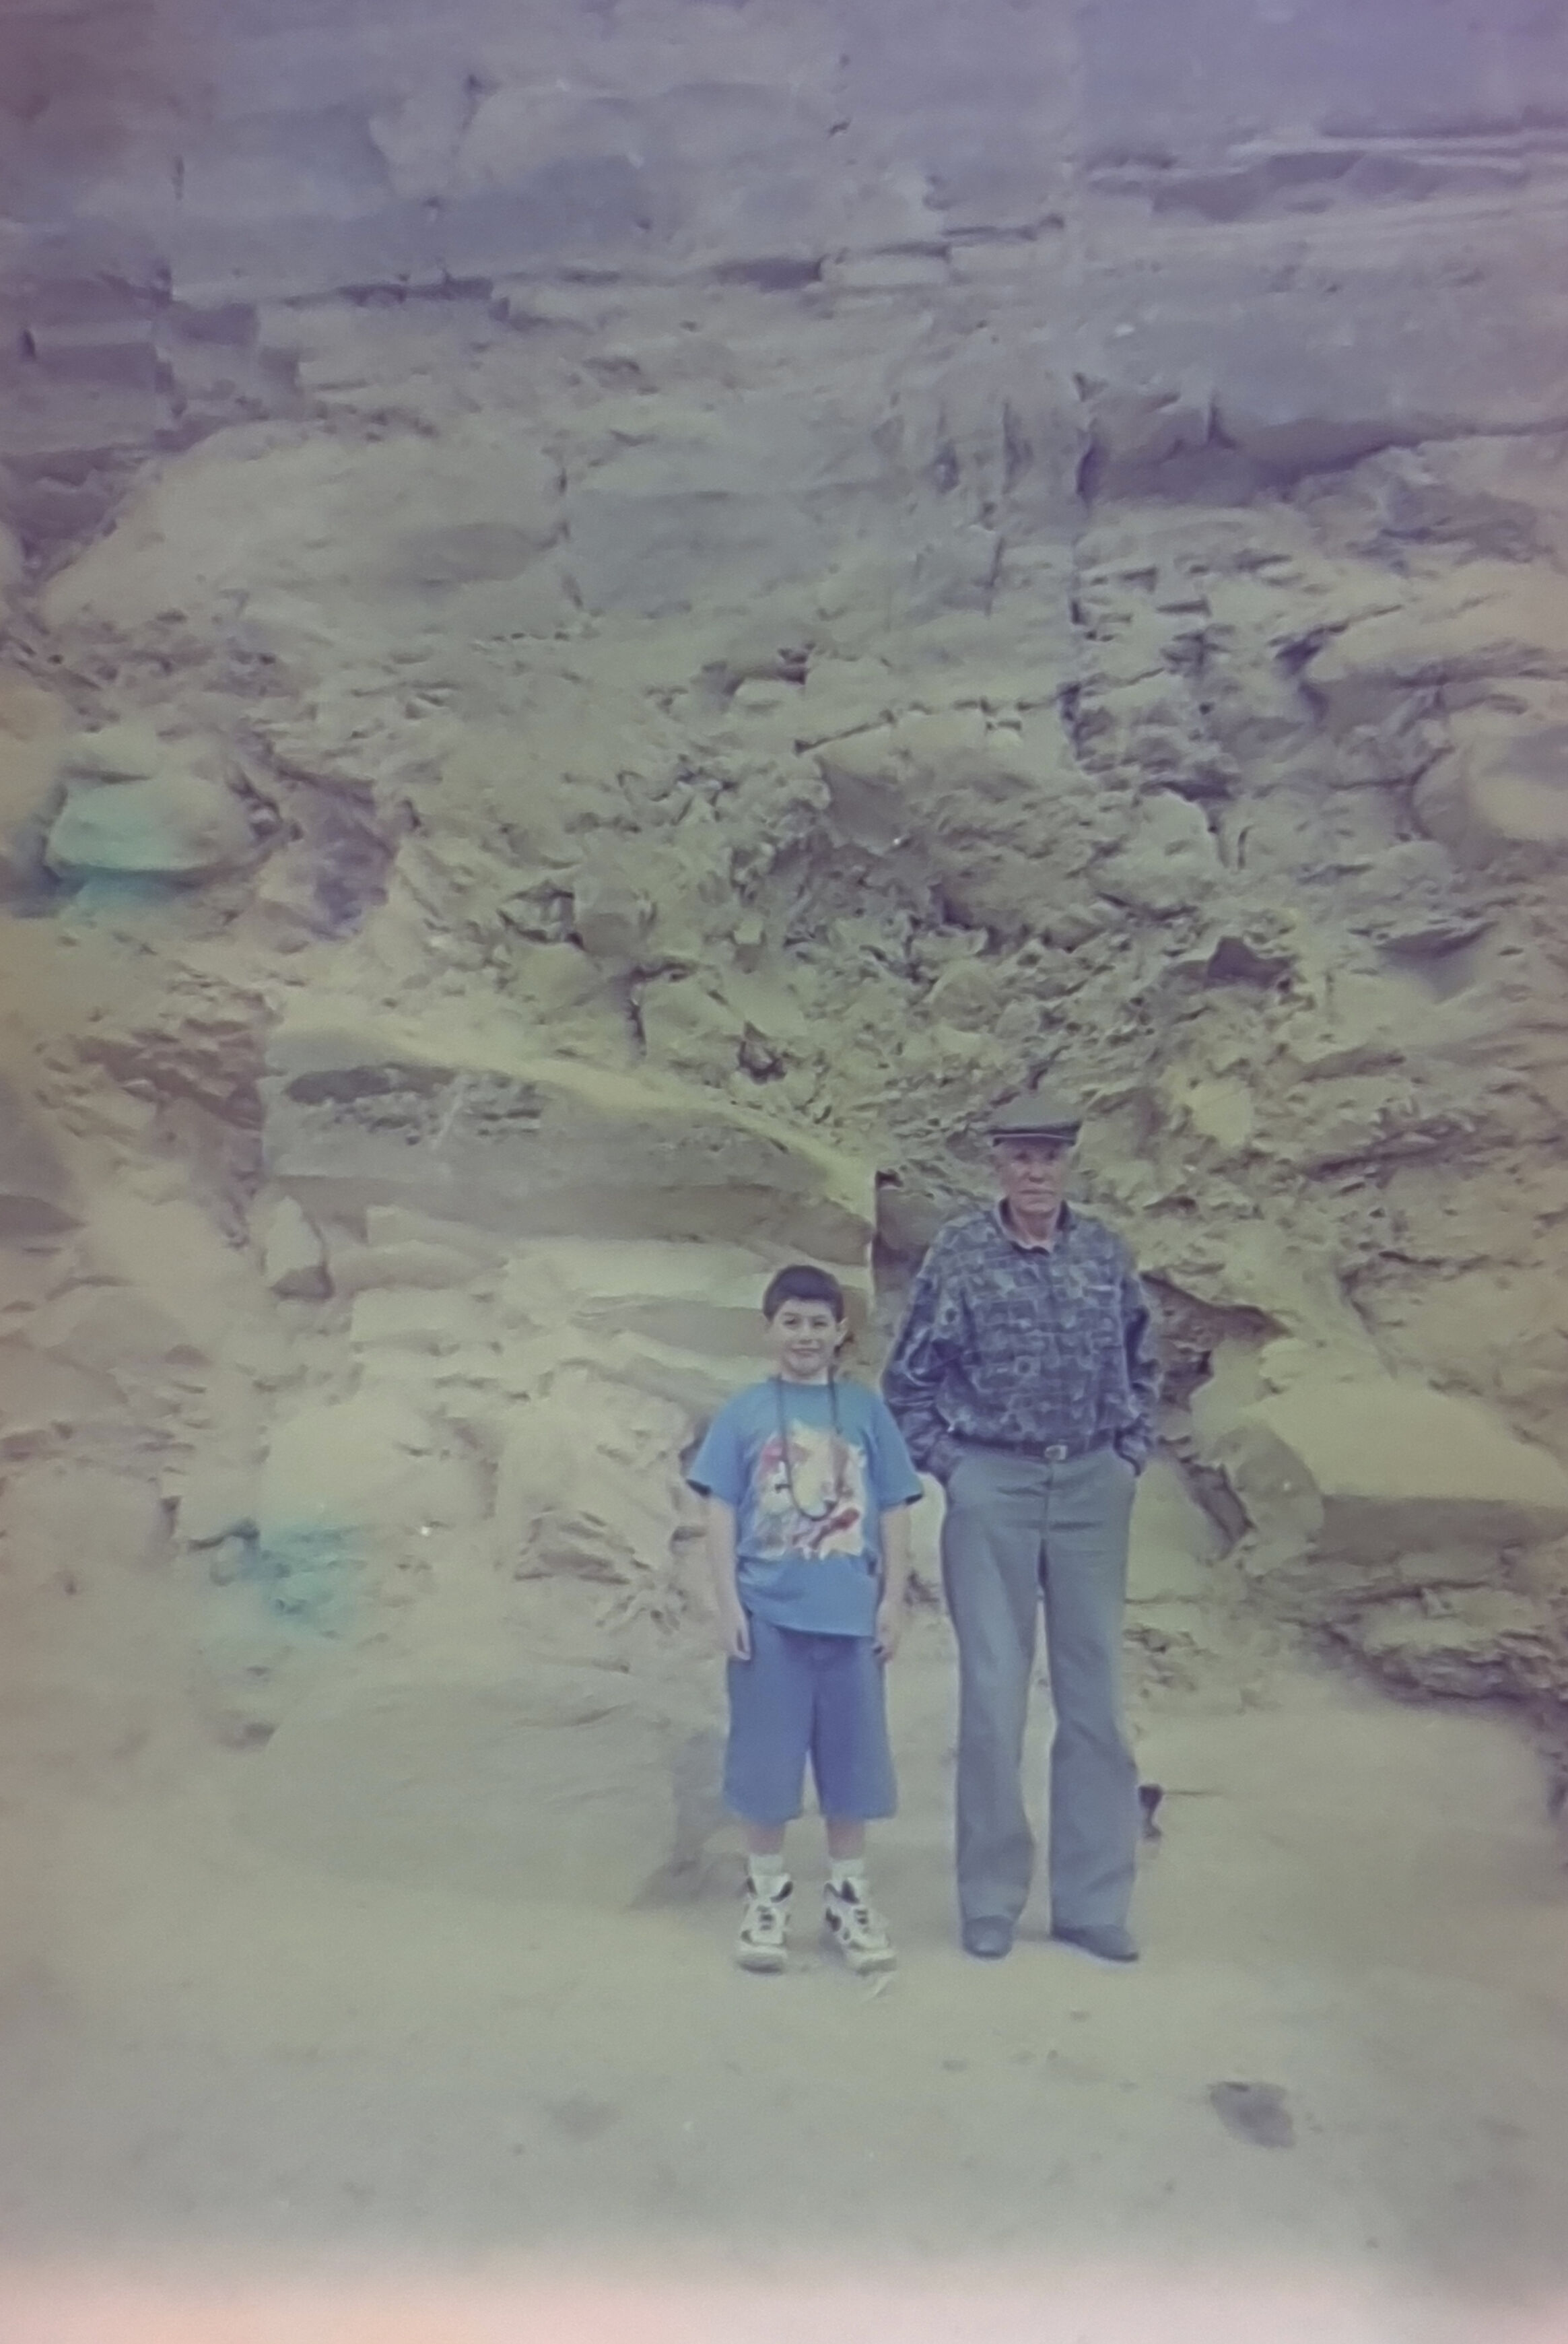 viaje a Tingo ,amazonas foto de mi padte con su nieto alo 2000